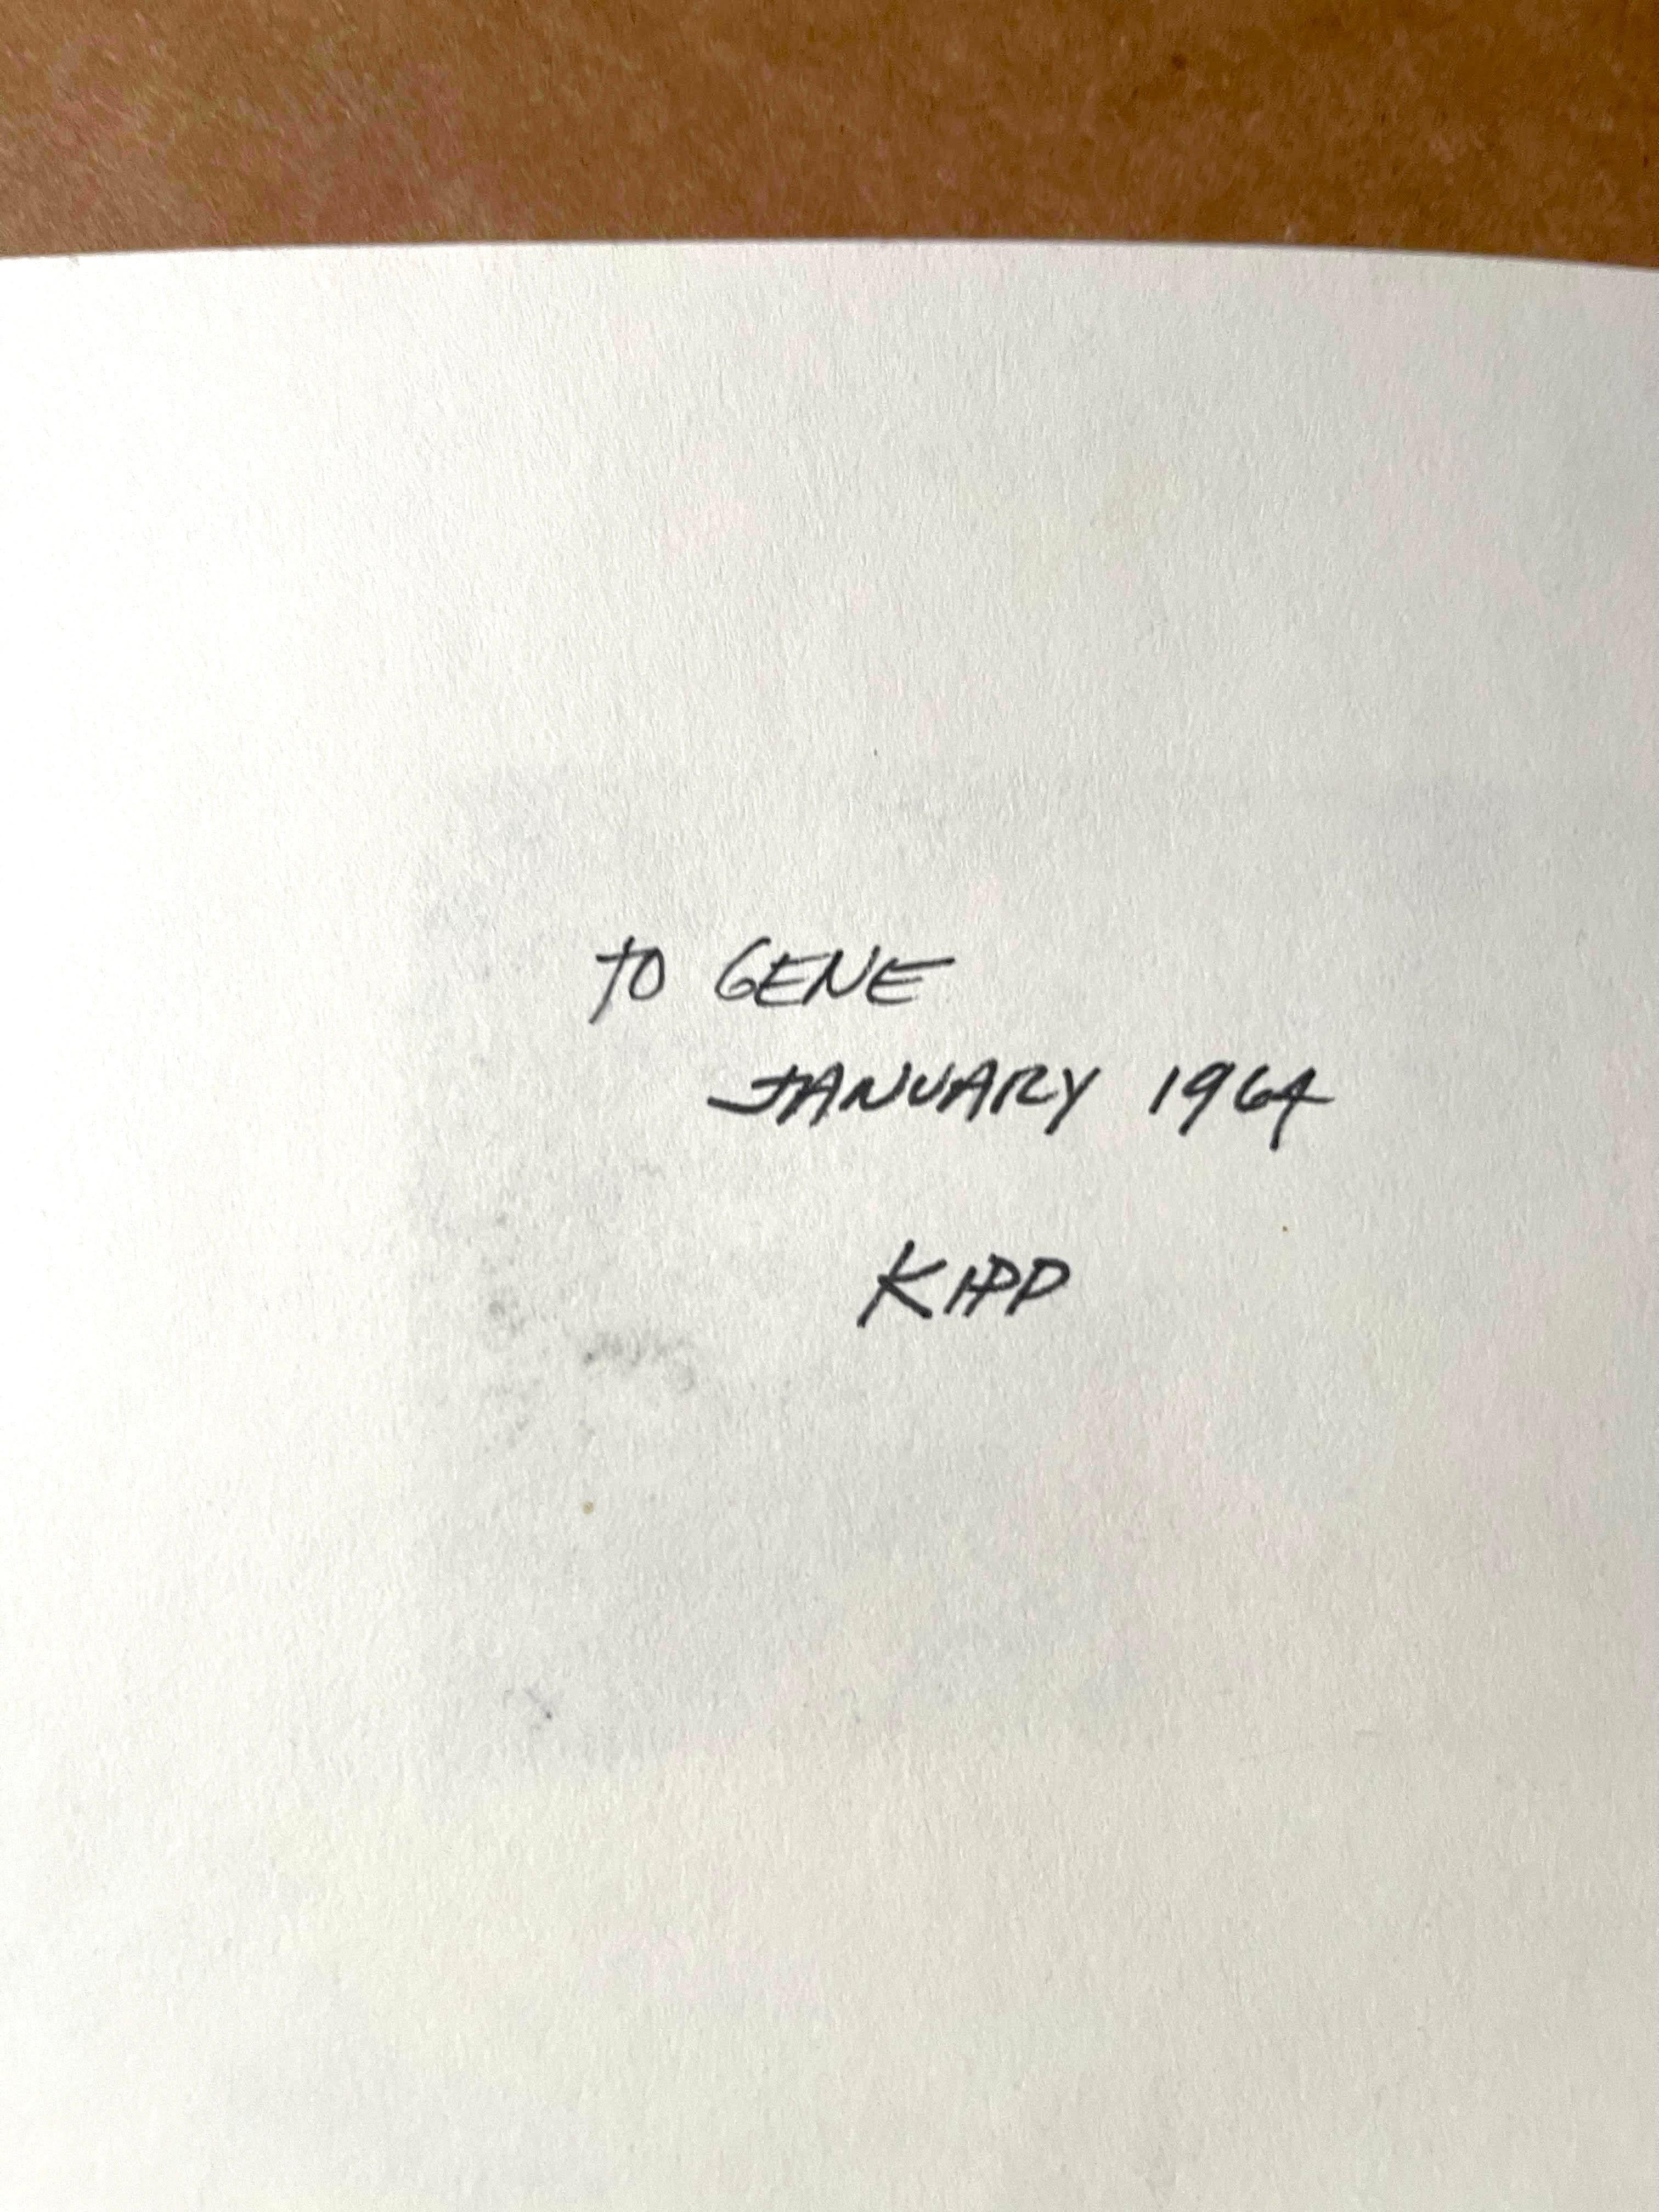 Lyman Kipp
Peinture minimaliste sans titre, 1964
Rouleau d'encre sur papier
Signé et daté à la main par Lyman Kipp au recto ; inscription au verso à Gene Baro (l'éminent critique et conservateur décédé en 1982).
14 × 21 1/2 pouces
Non